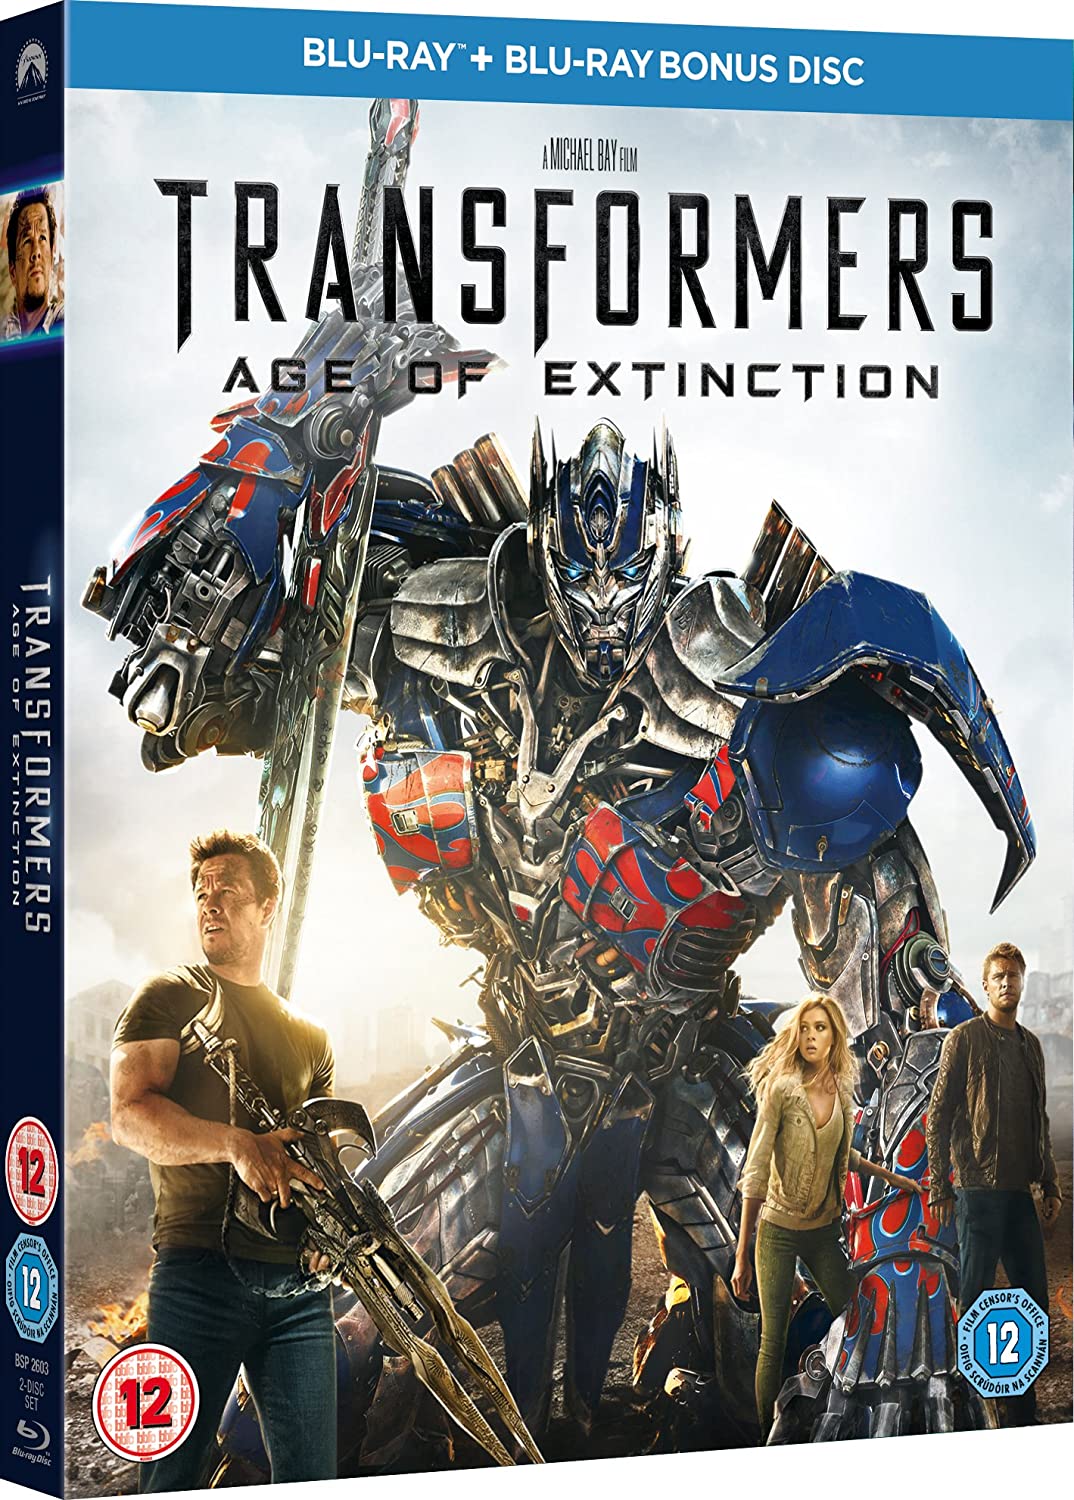 Transformers: Age of Extinction [Blu-ray + Disque bonus] [Région gratuite]